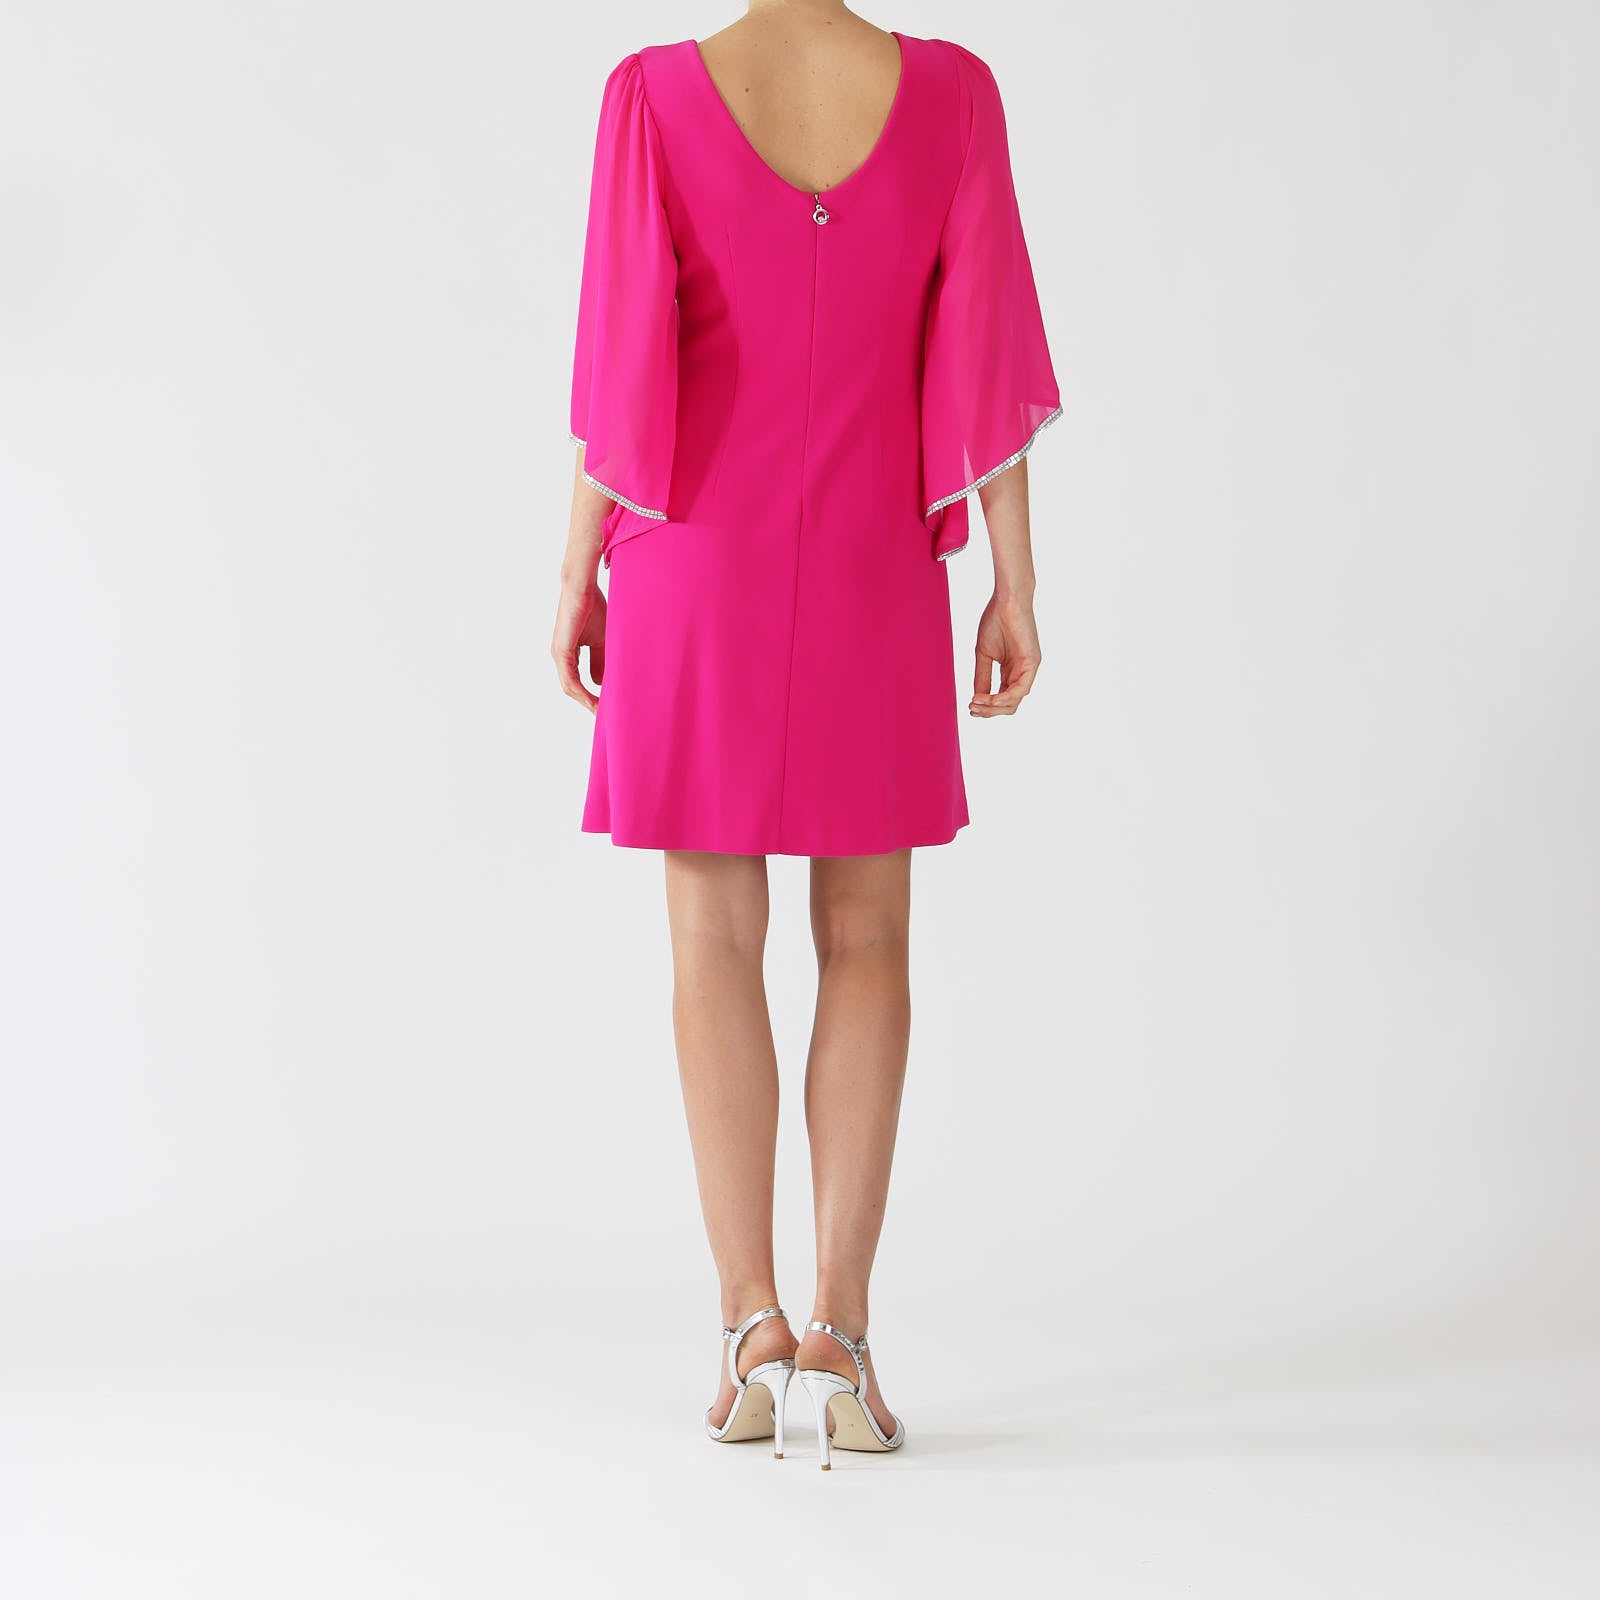 Shocking Pink Chiffon Sleeve Dress